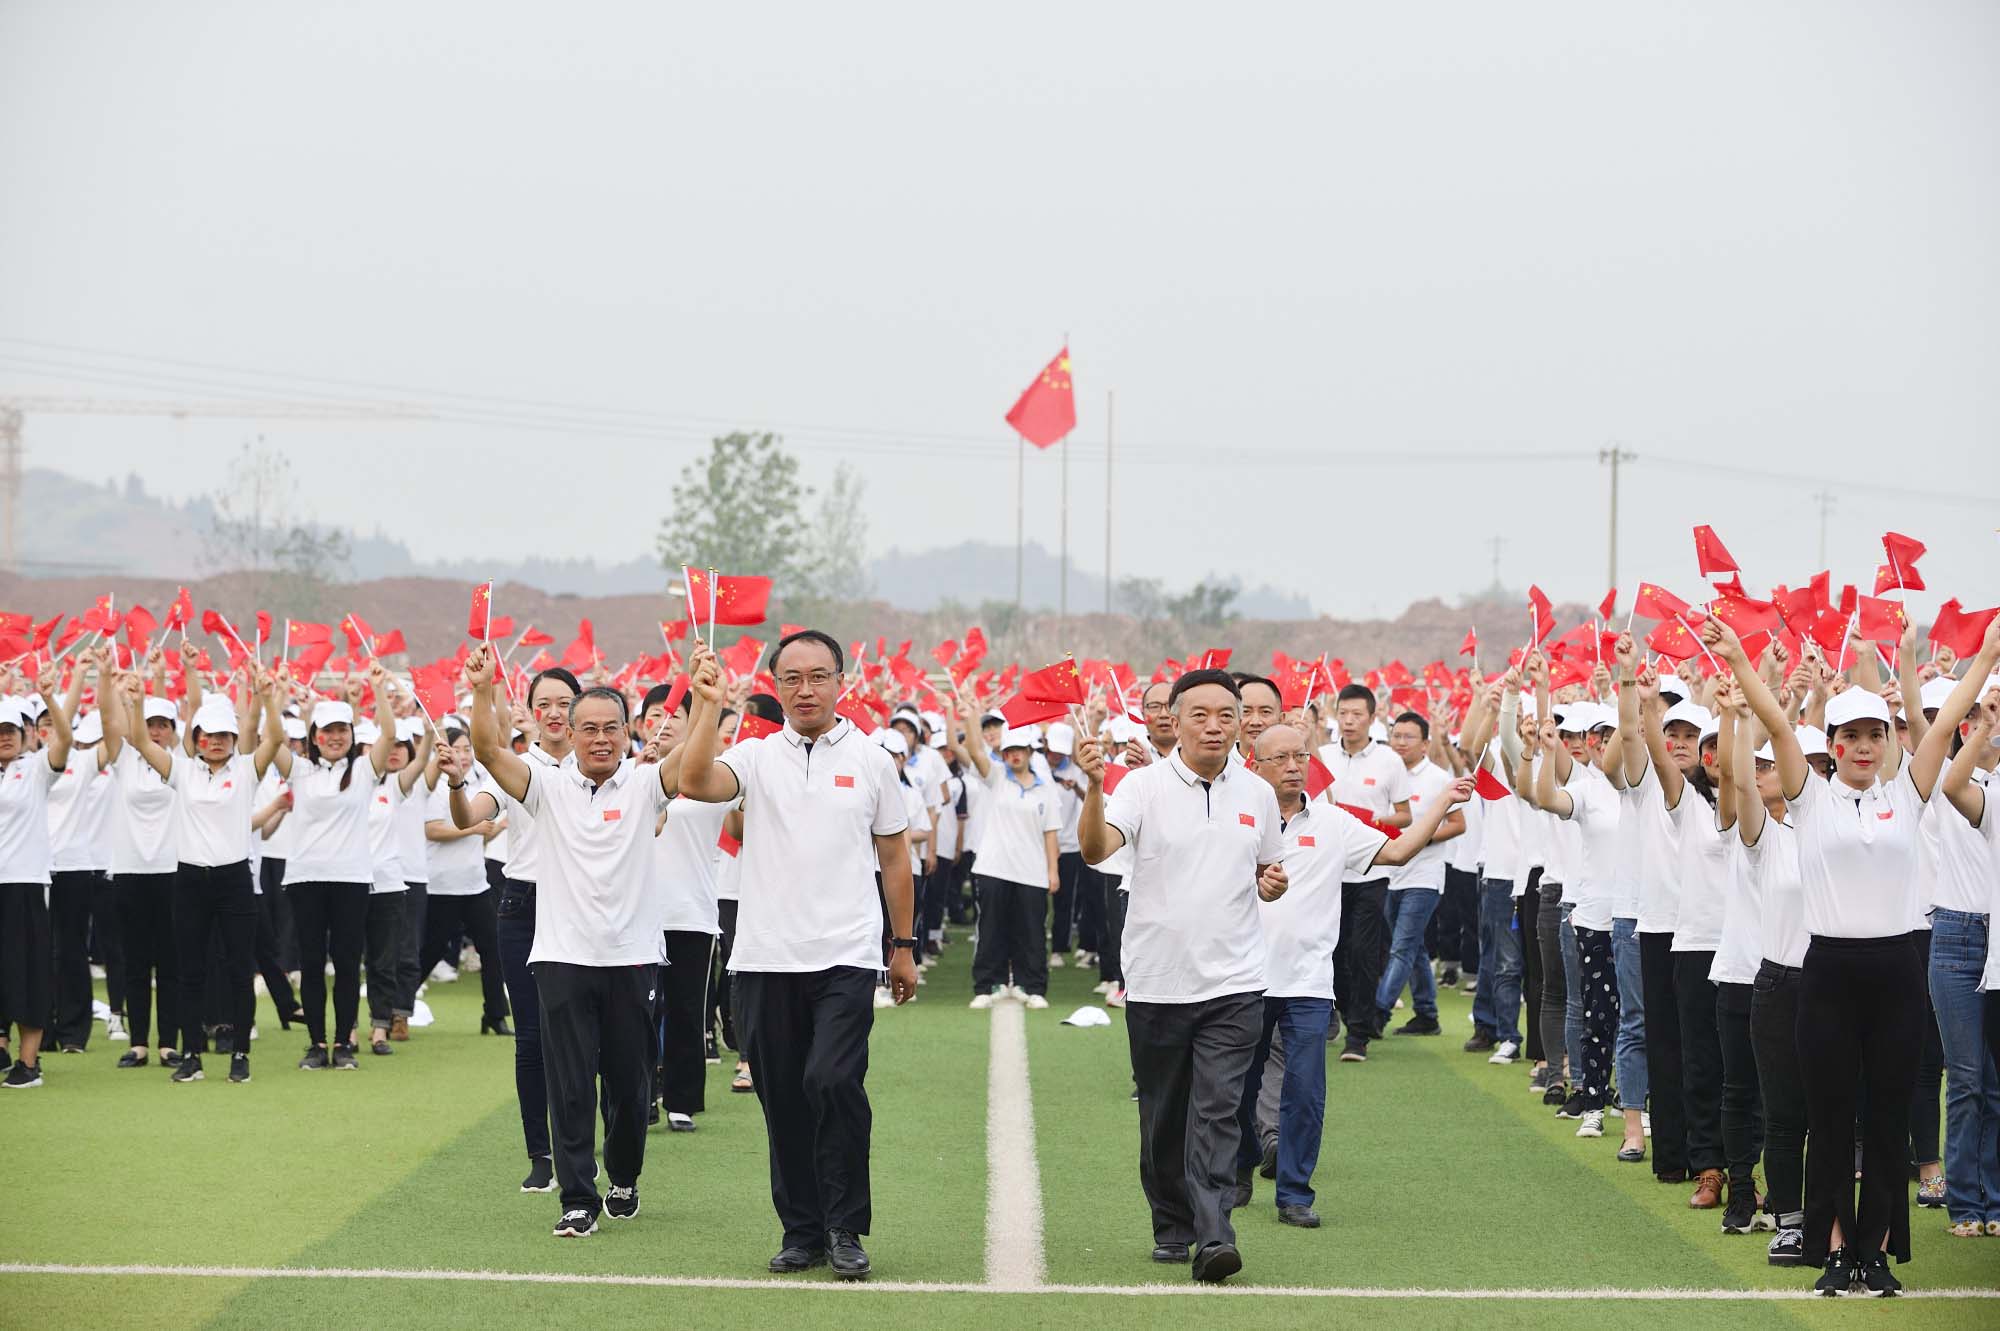 “我与祖国共奋进” 四川省南充卫生学校举行庆祝建国70周年主题教育活动